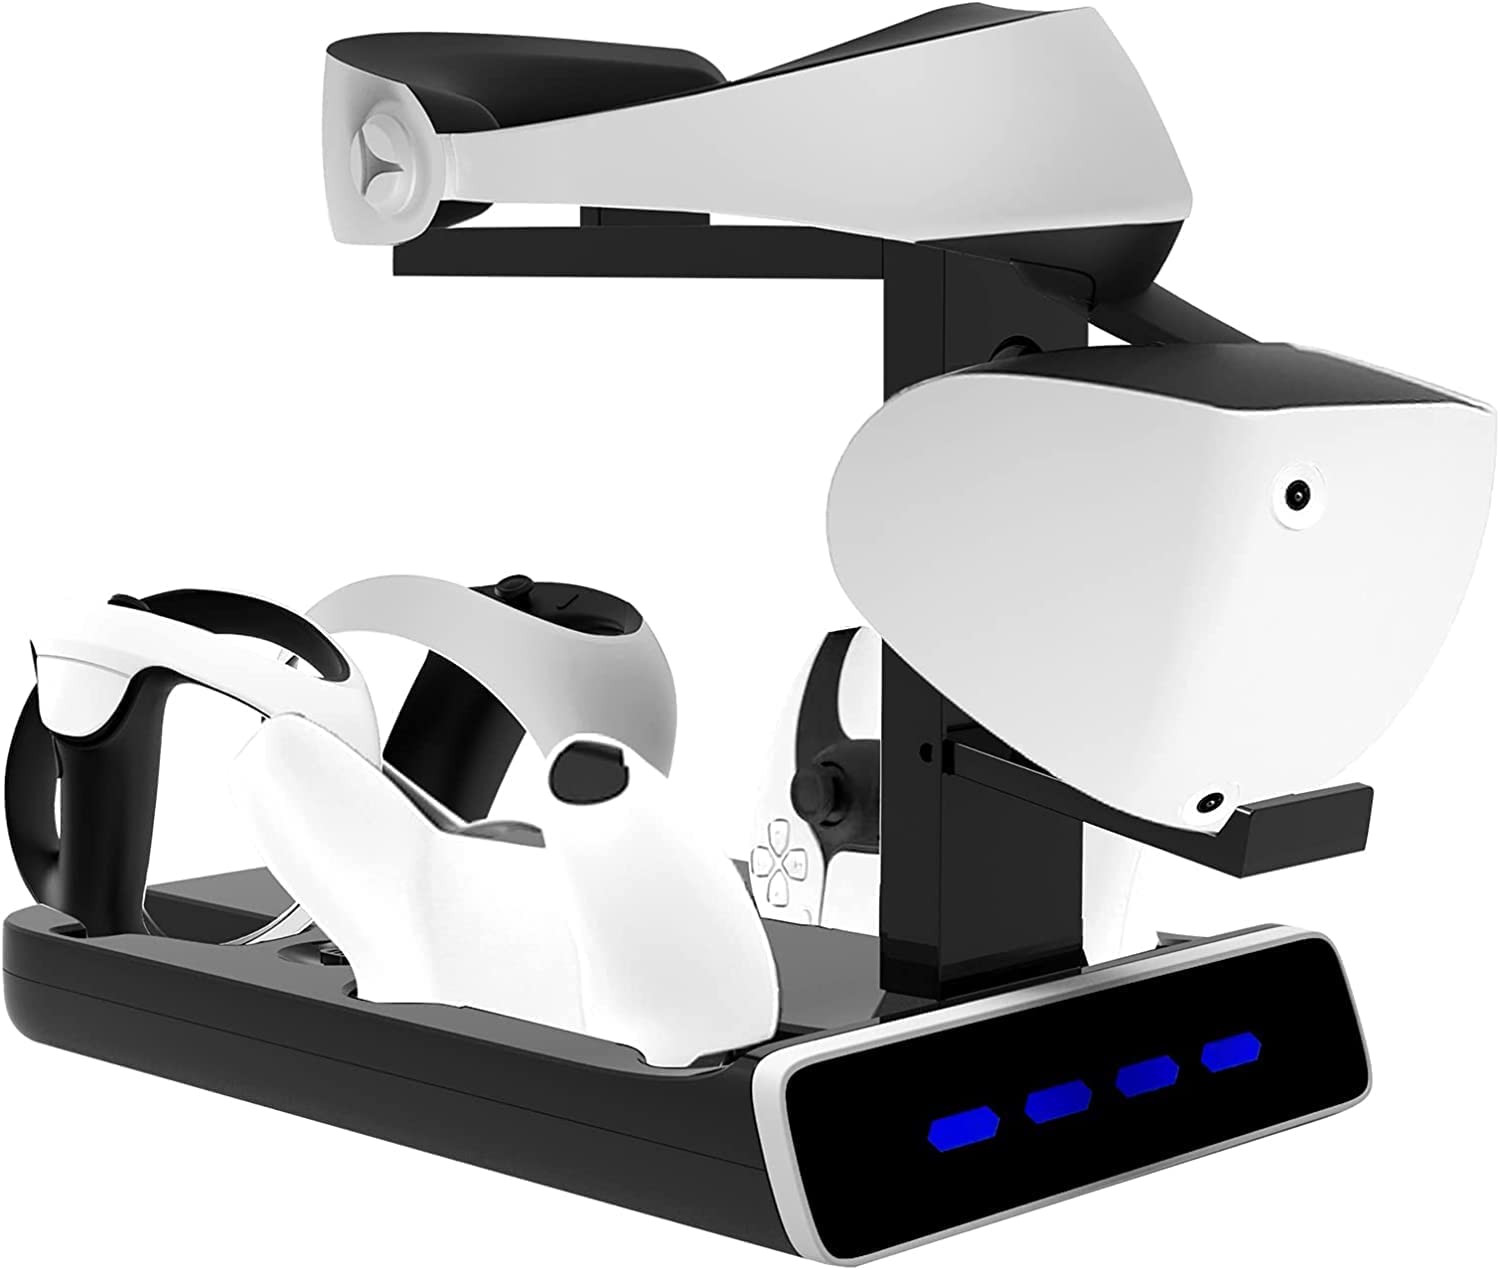 para suporte de exibição de carregamento Snoy PSVR2 com luz LED - exibição de suporte VR seu PSVR2 - carregamento compatível com alça Sony Playstation VR2, carregador de controlador PS5, carregador de assento-para PS VR2Site oficial de vendas da TwiHill